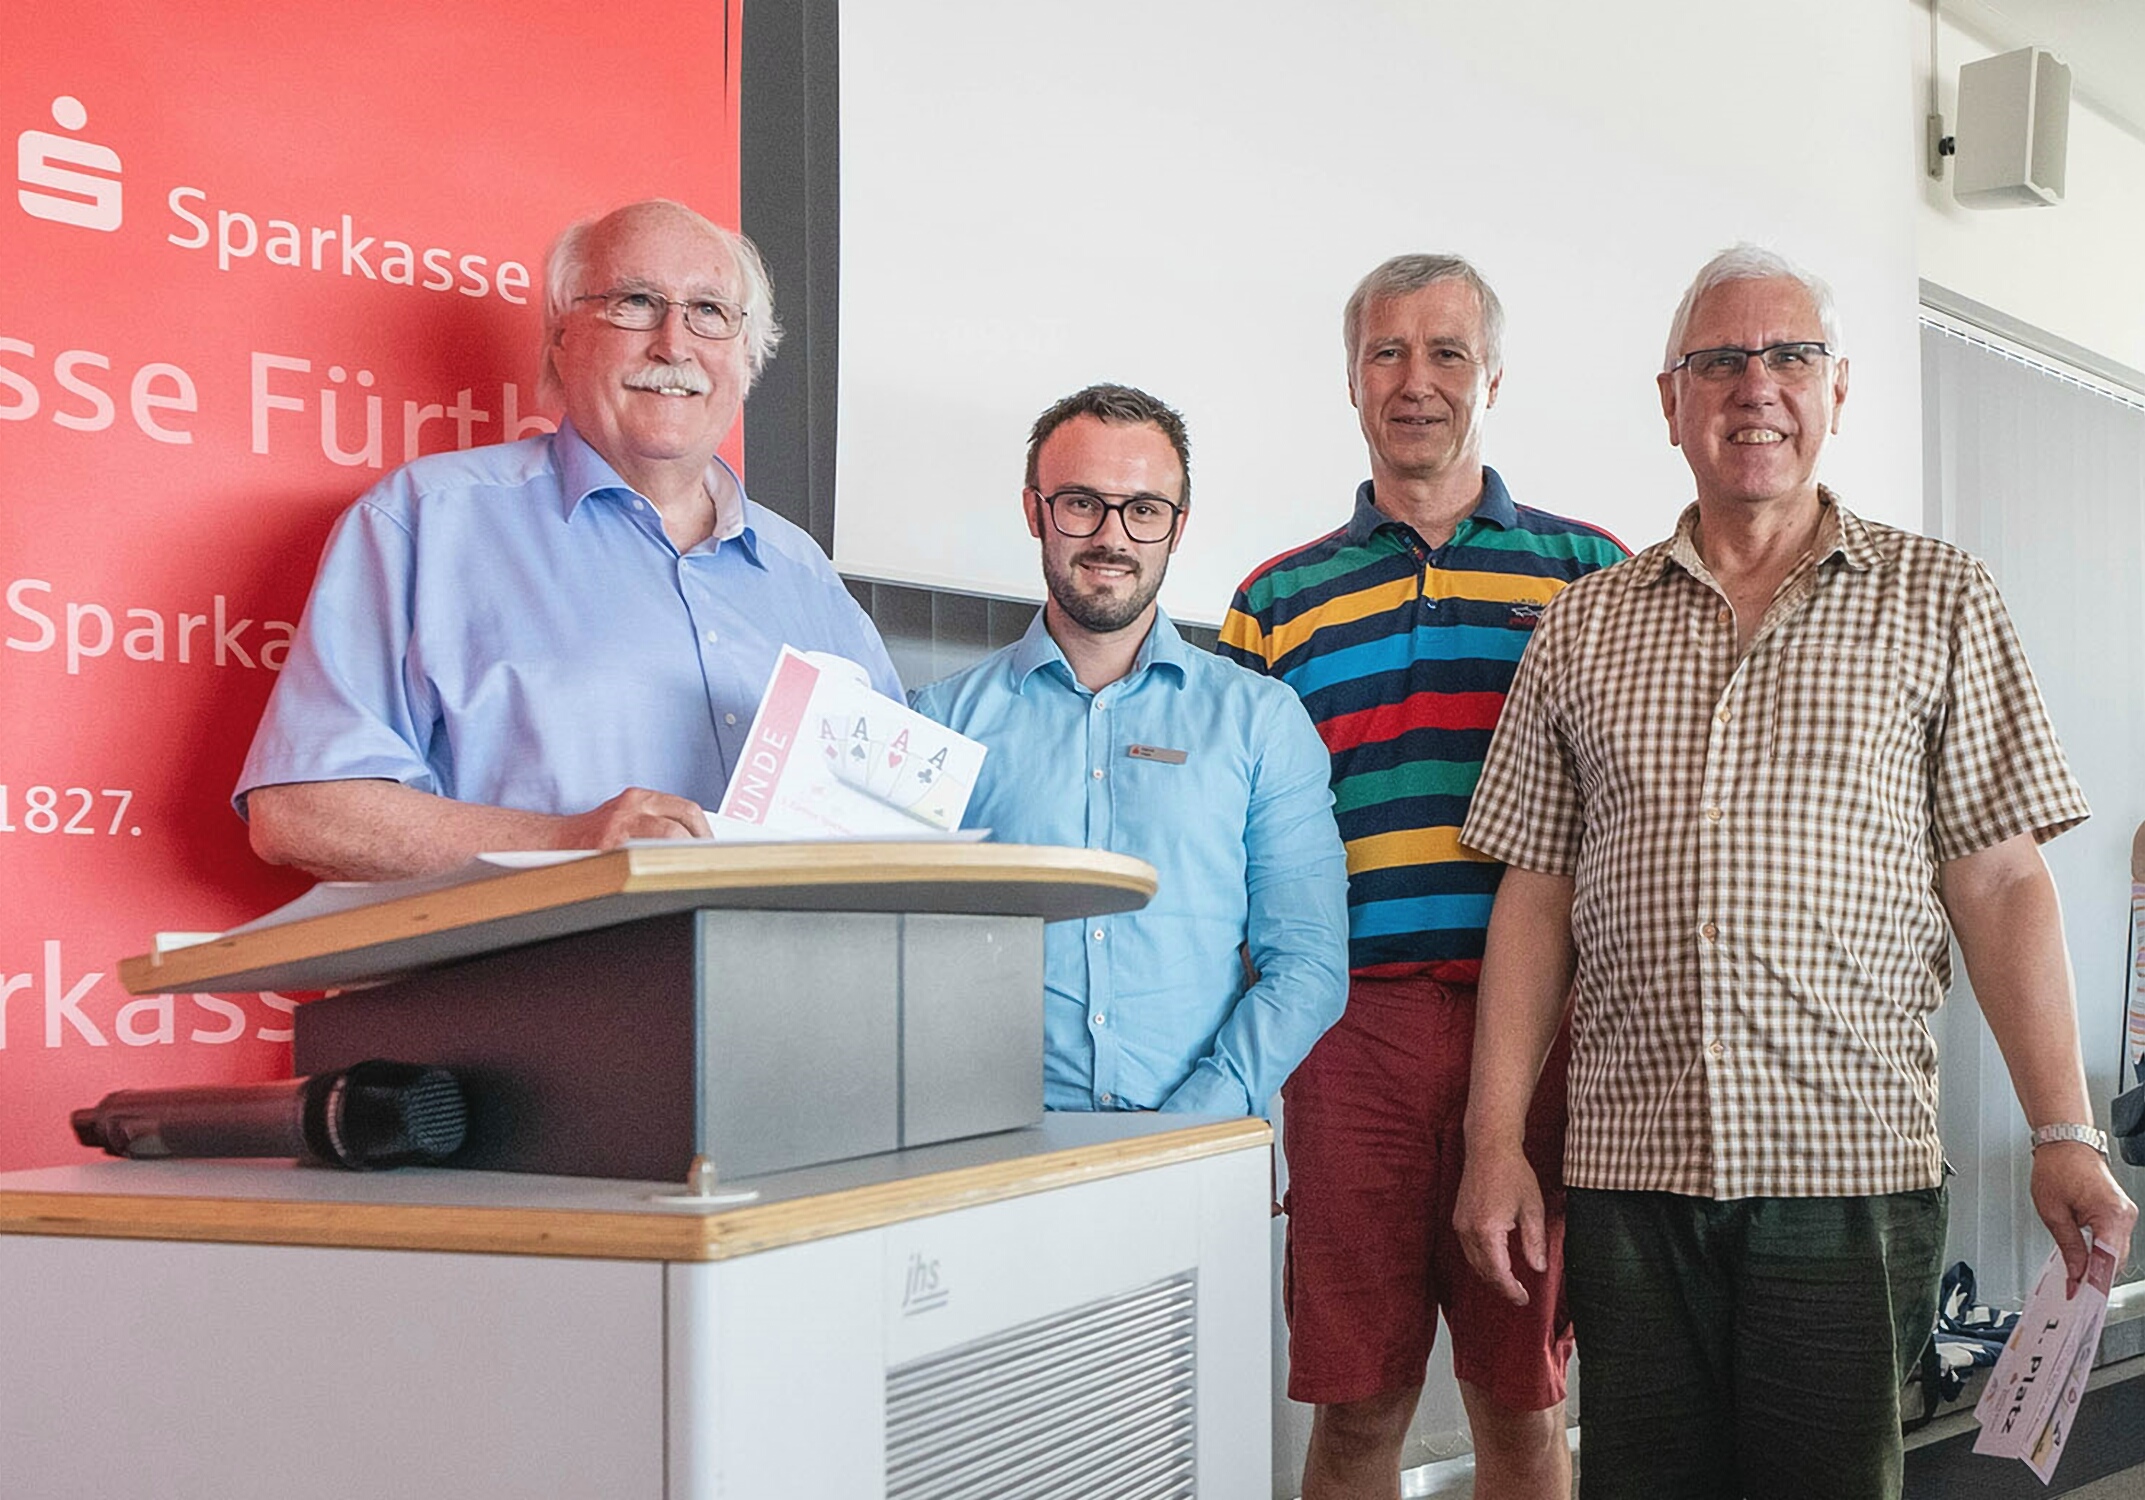 Am 25. Juli lud die Sparkasse Fürth – gemeinsam mit der Initiative „Bridge-Stadt Fürth“ - zum 3. Fürther Sparkassen-Pokal.